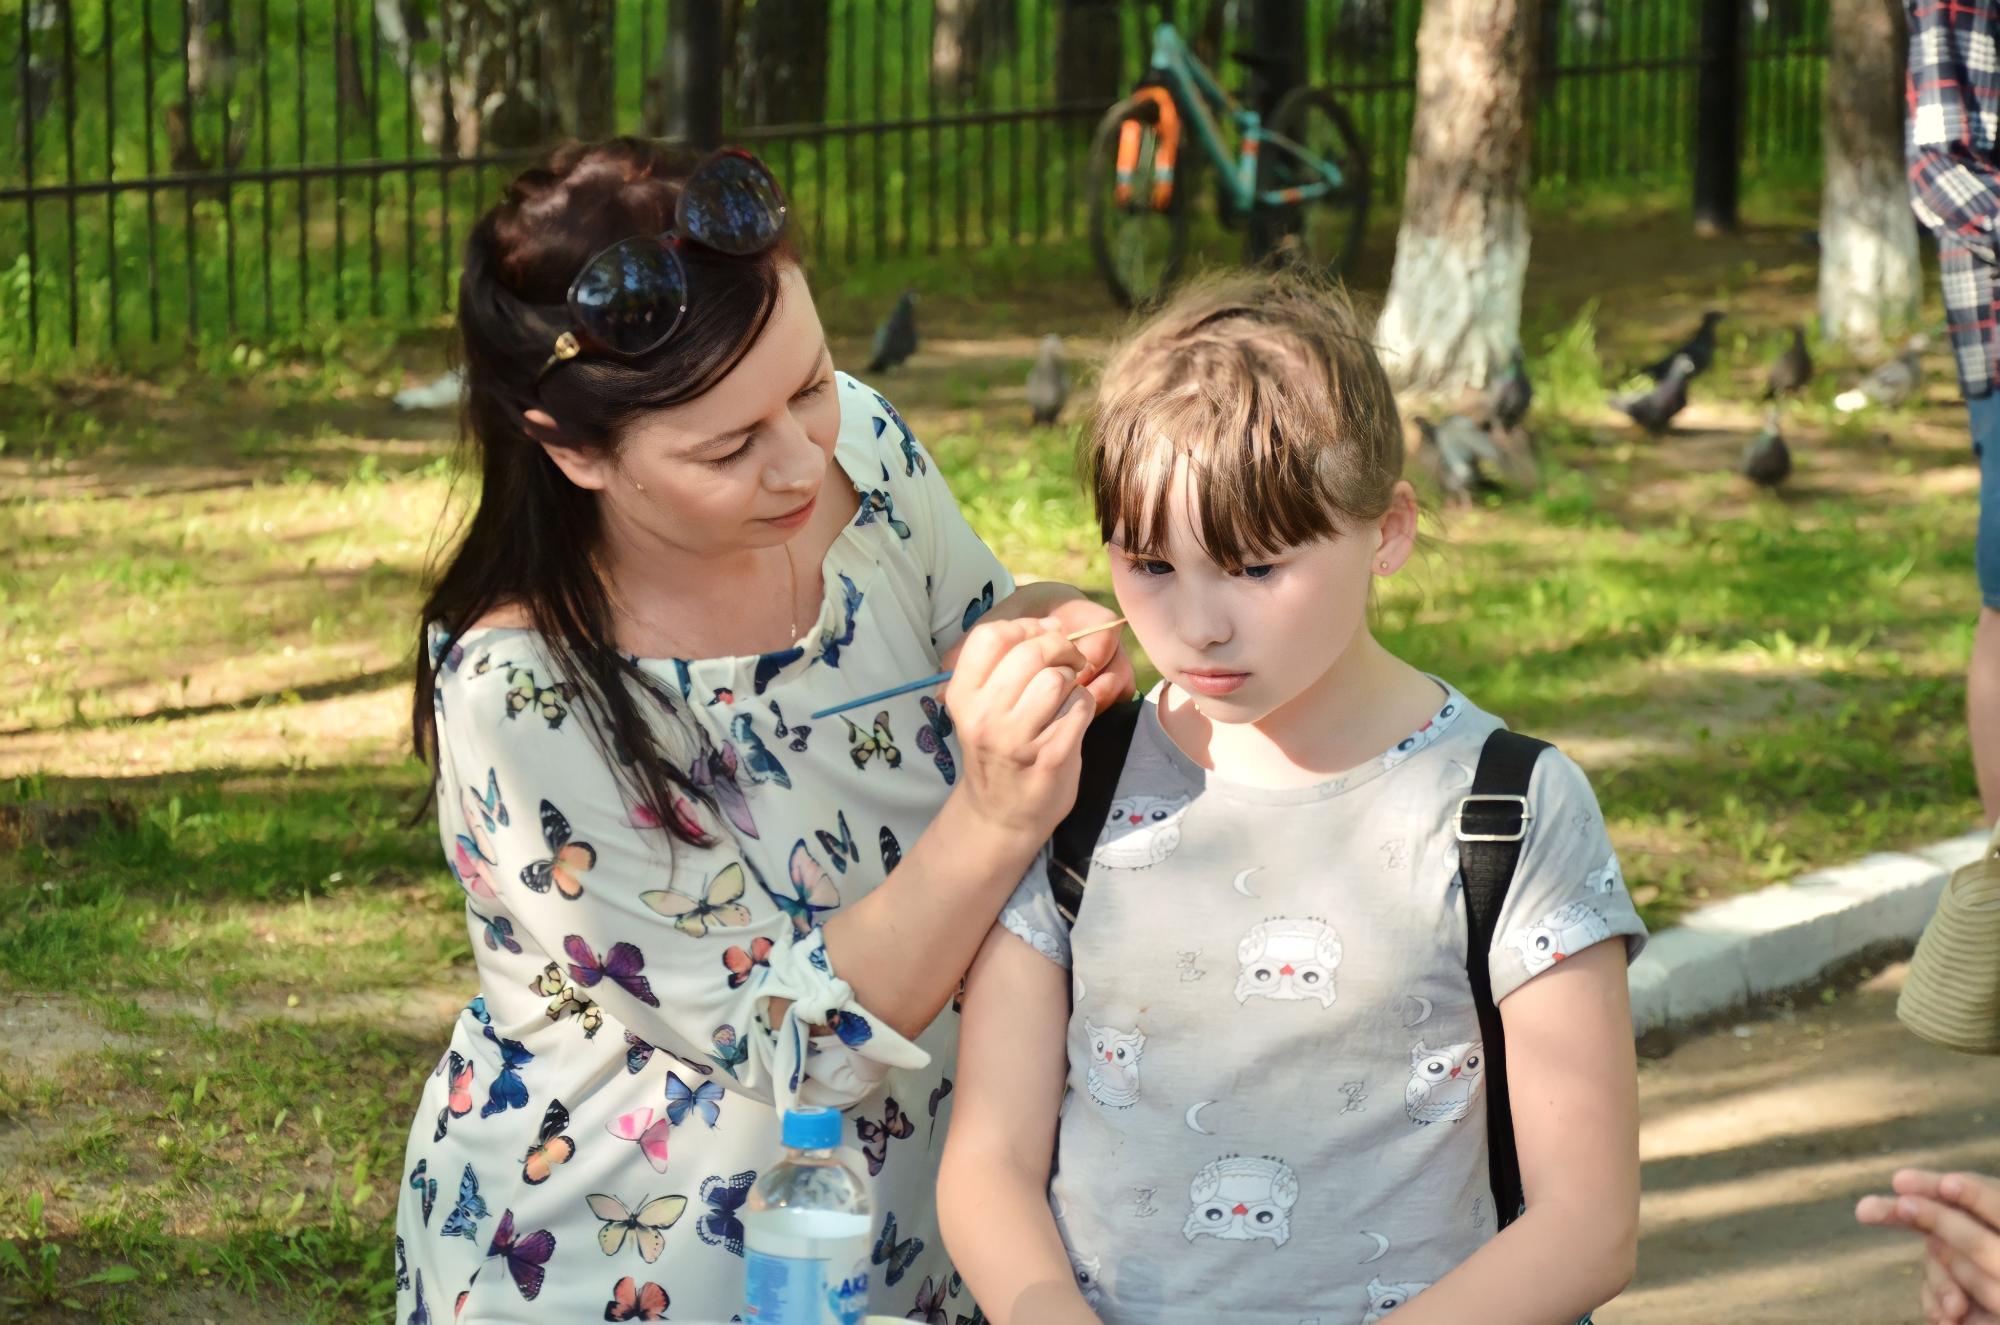 ФОТО к новости: Праздник для детей в Новосибирском педагогическом: игры, творчество и забота о будущем